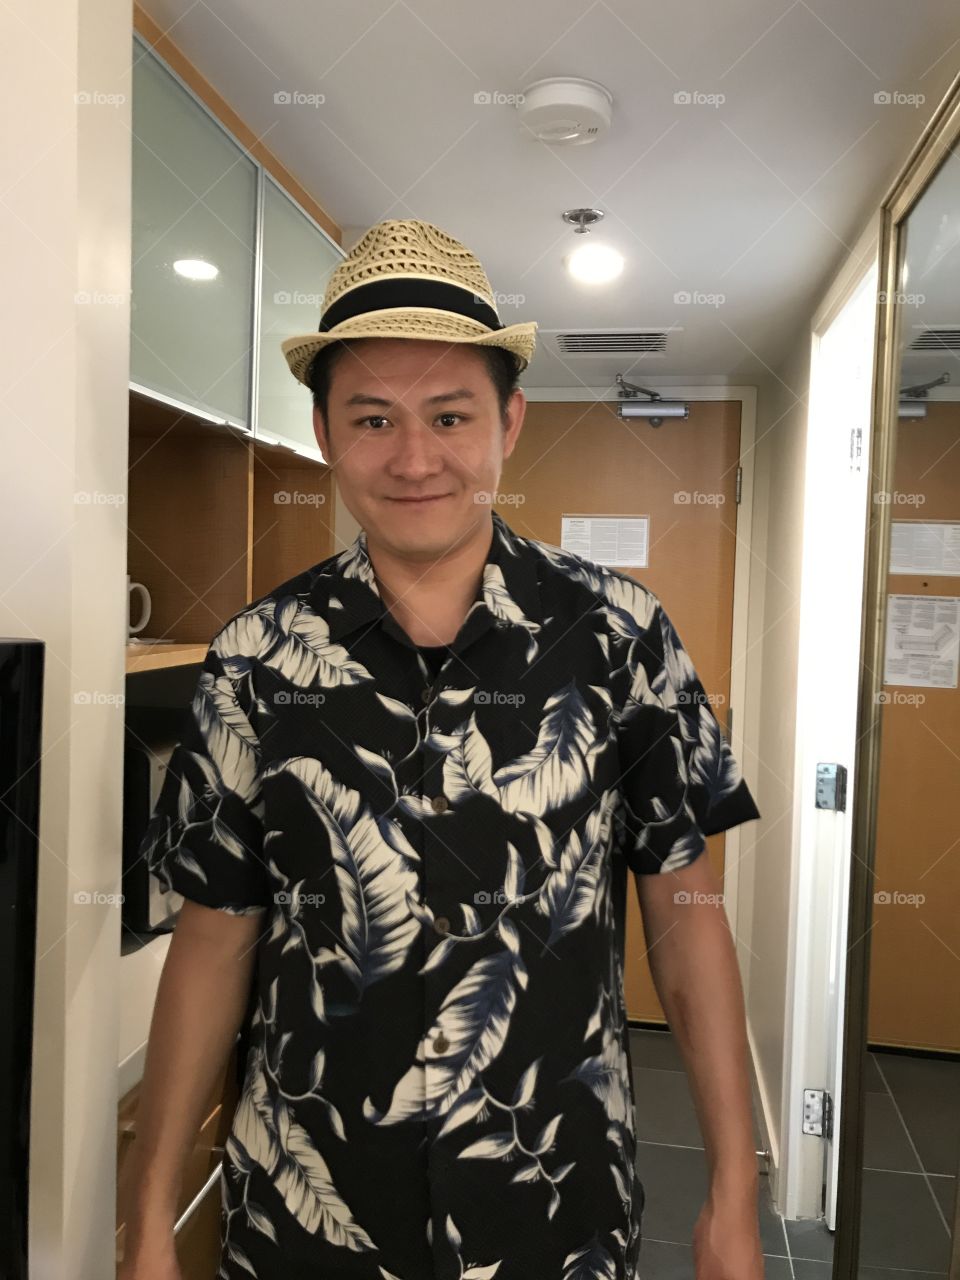 Hawaiian look, hat, Hawaii shirt, traveling, smile, hotel